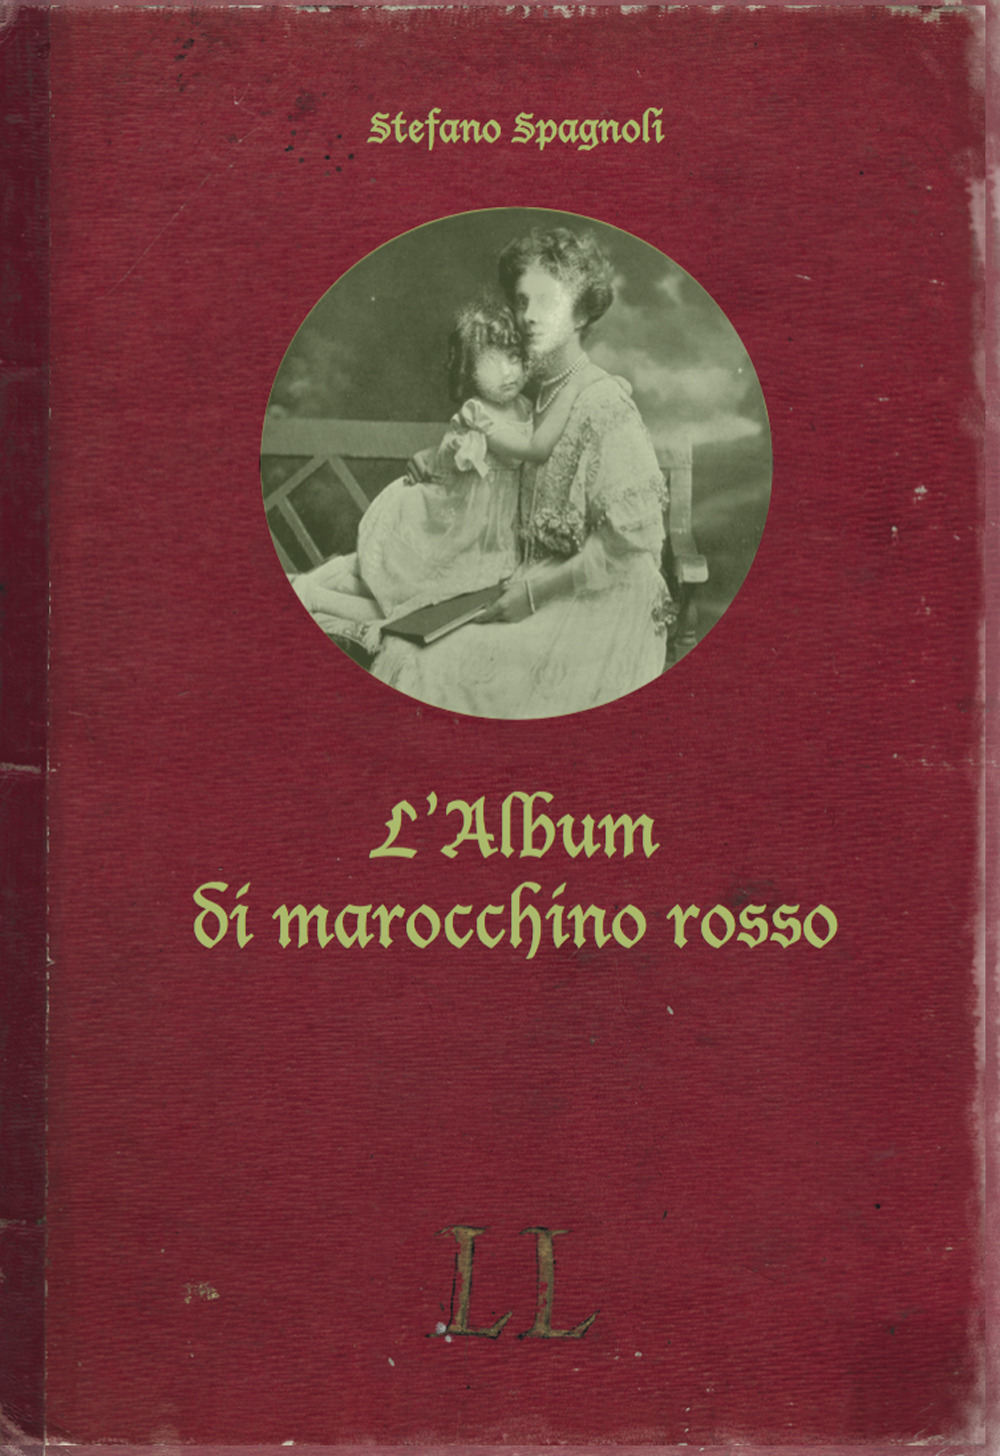 L'album di marocchino rosso